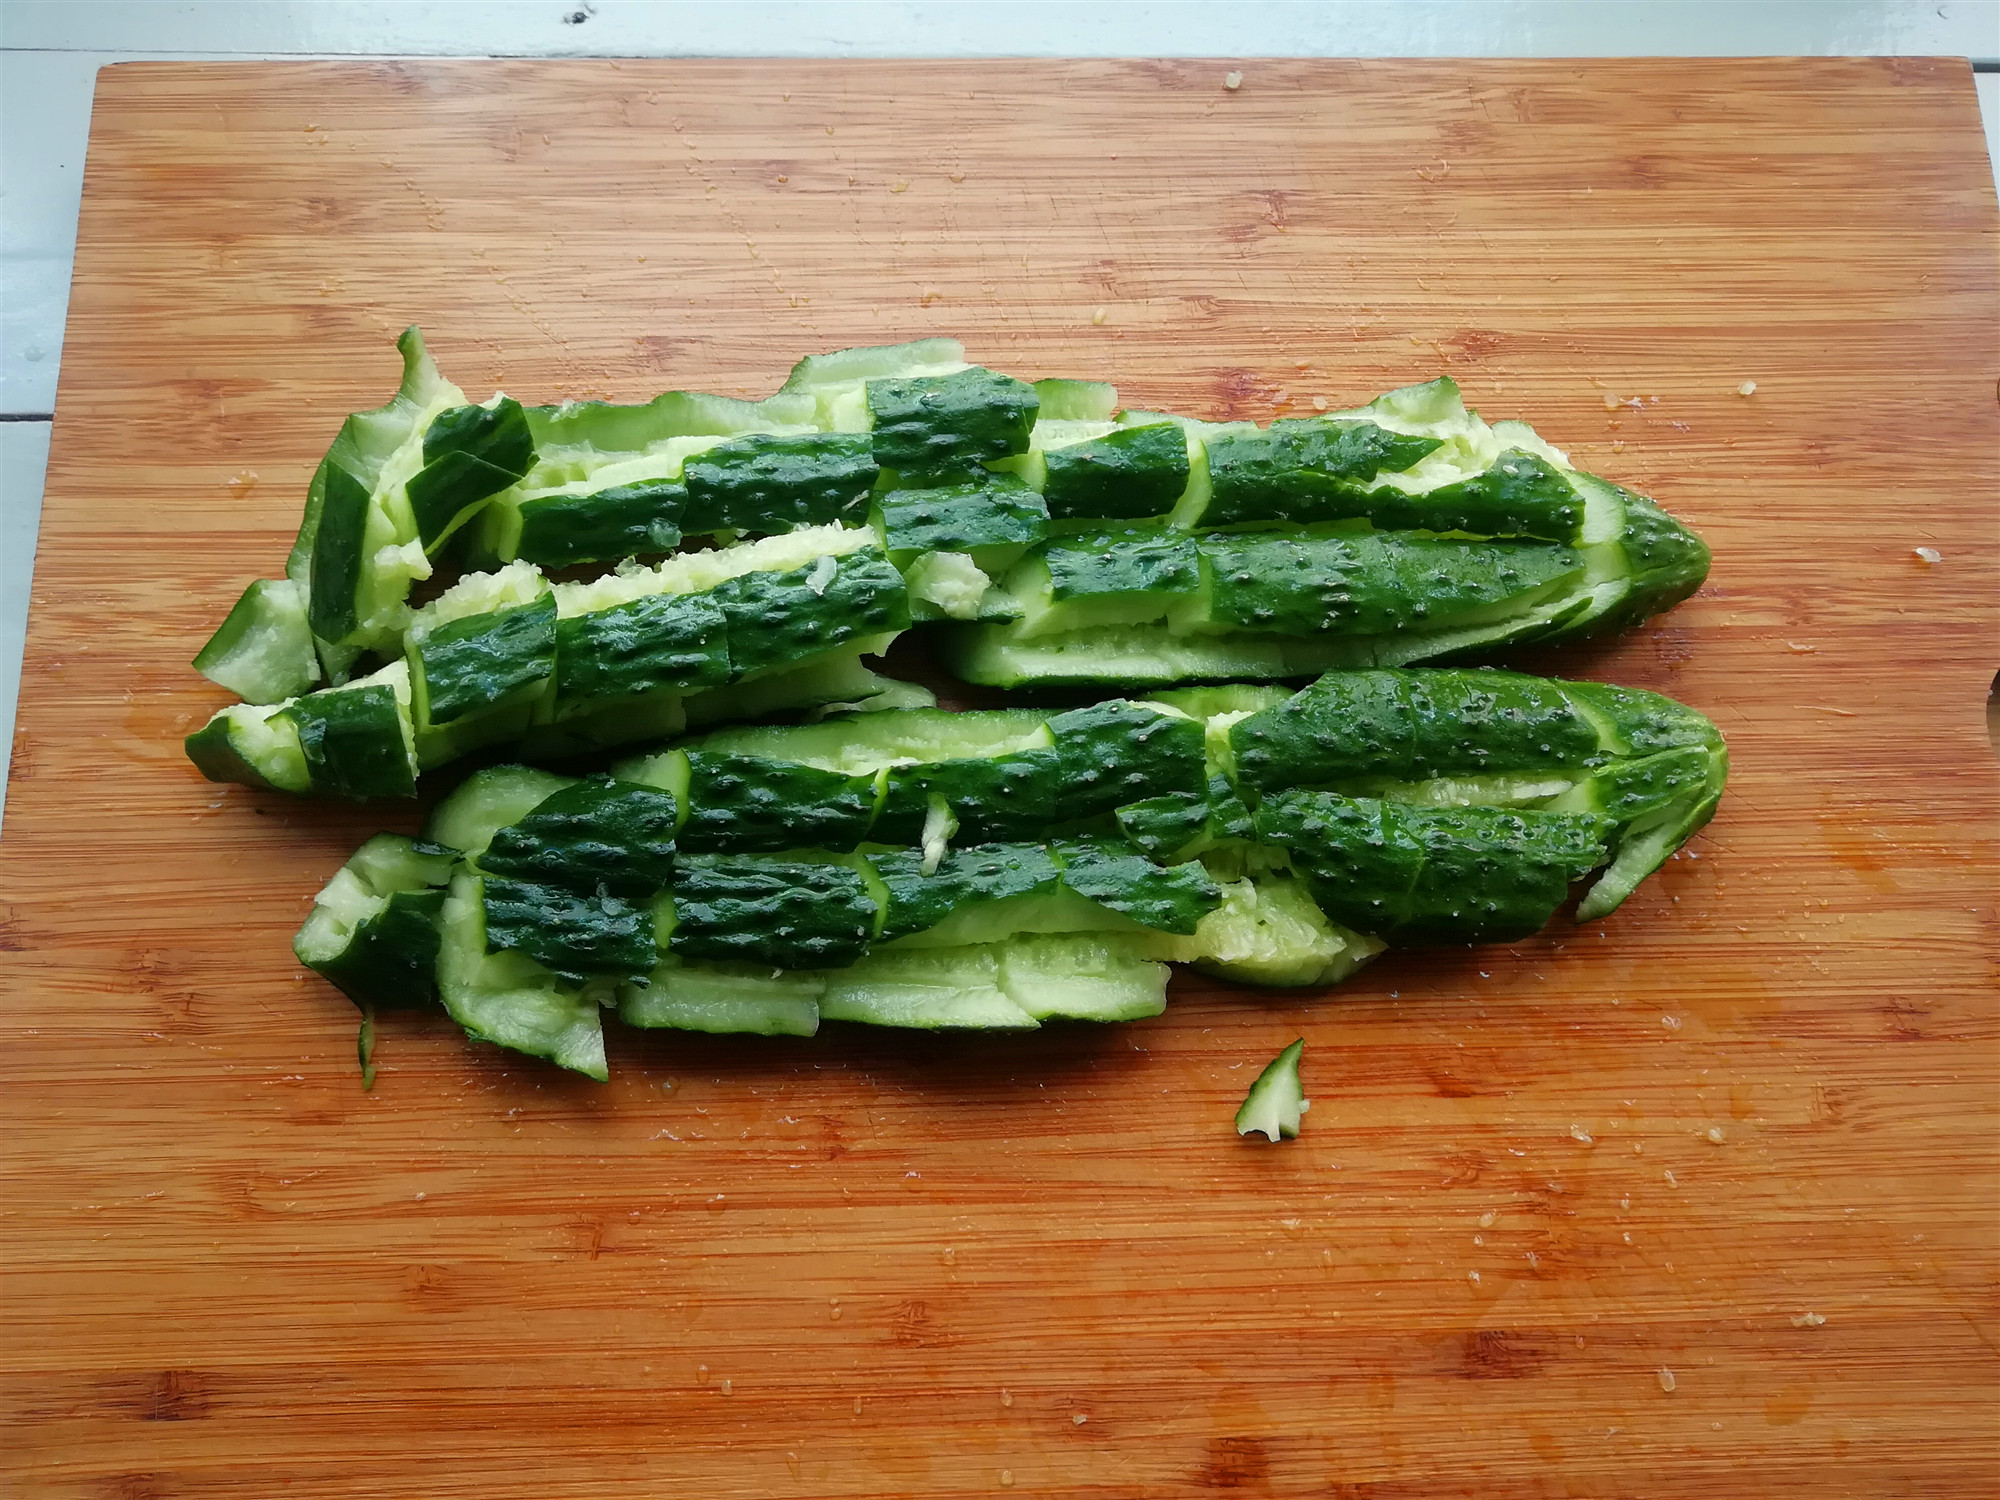 2.将黄瓜放在菜板上,用刀背将黄瓜拍裂,在将黄瓜切成段.